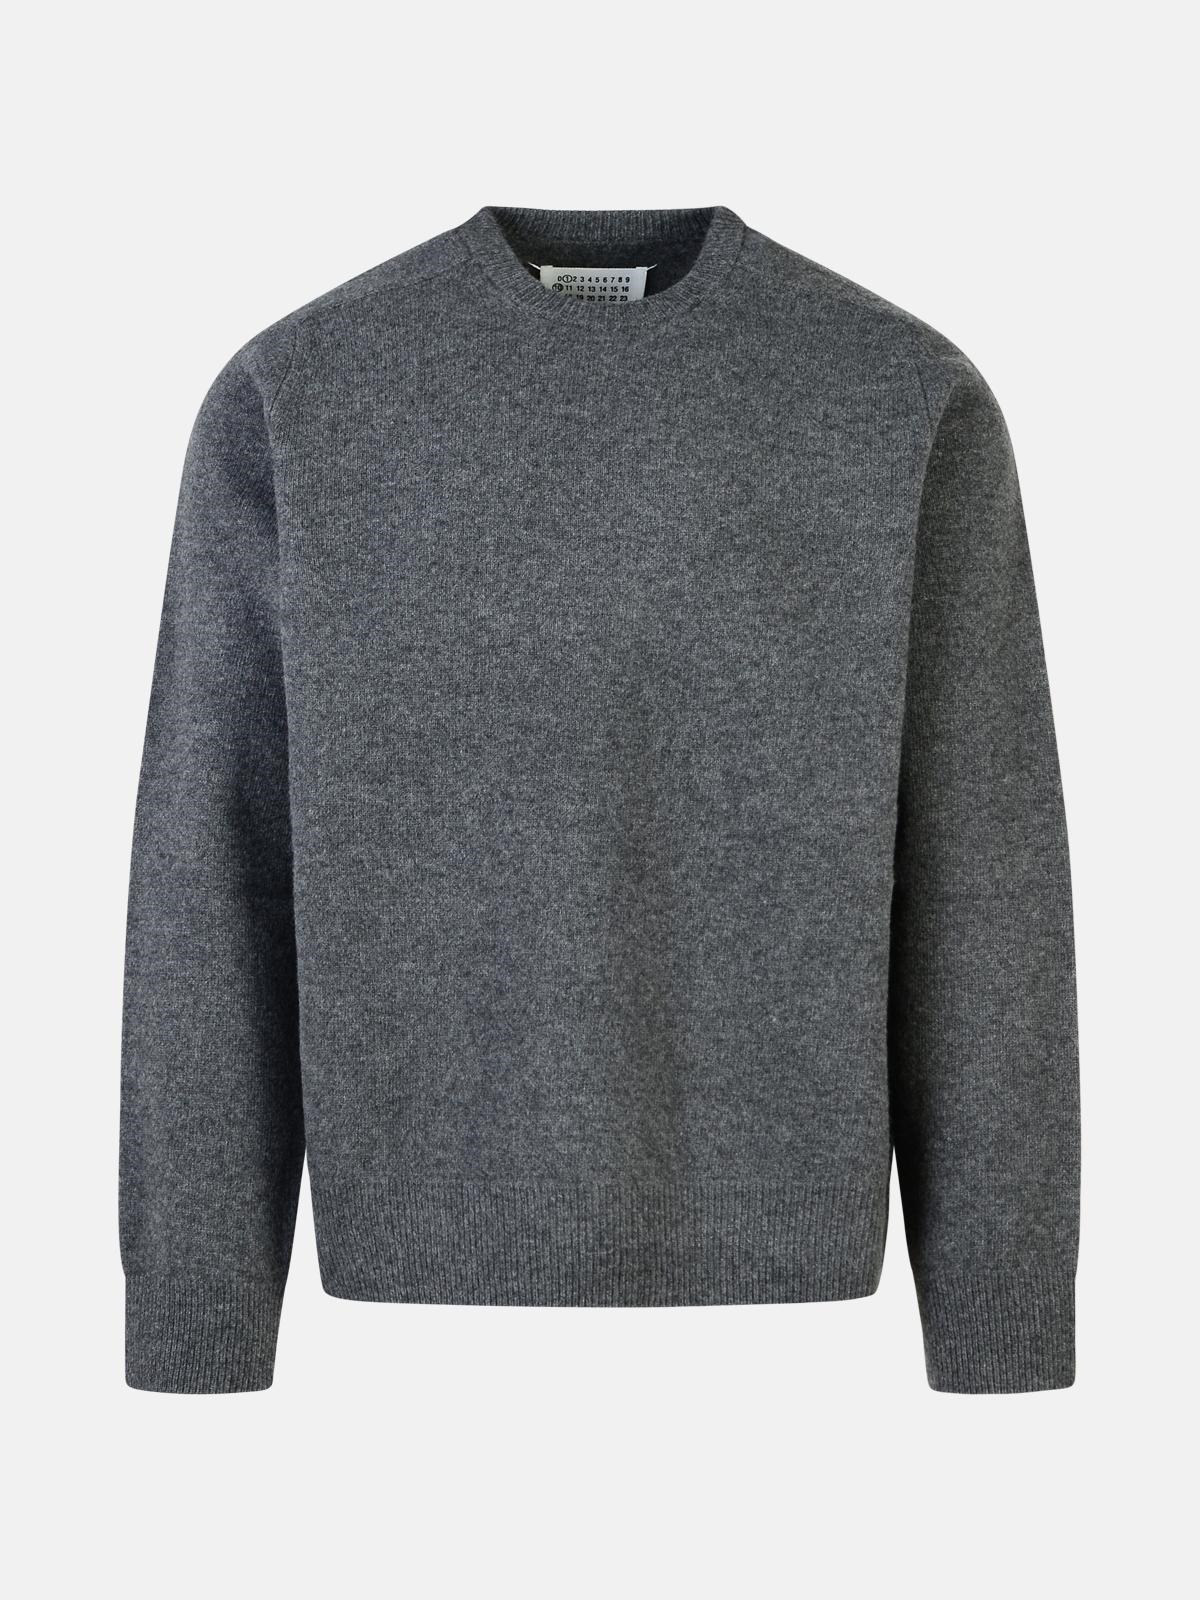 Maison Margiela Grey Wool Sweater In Gray